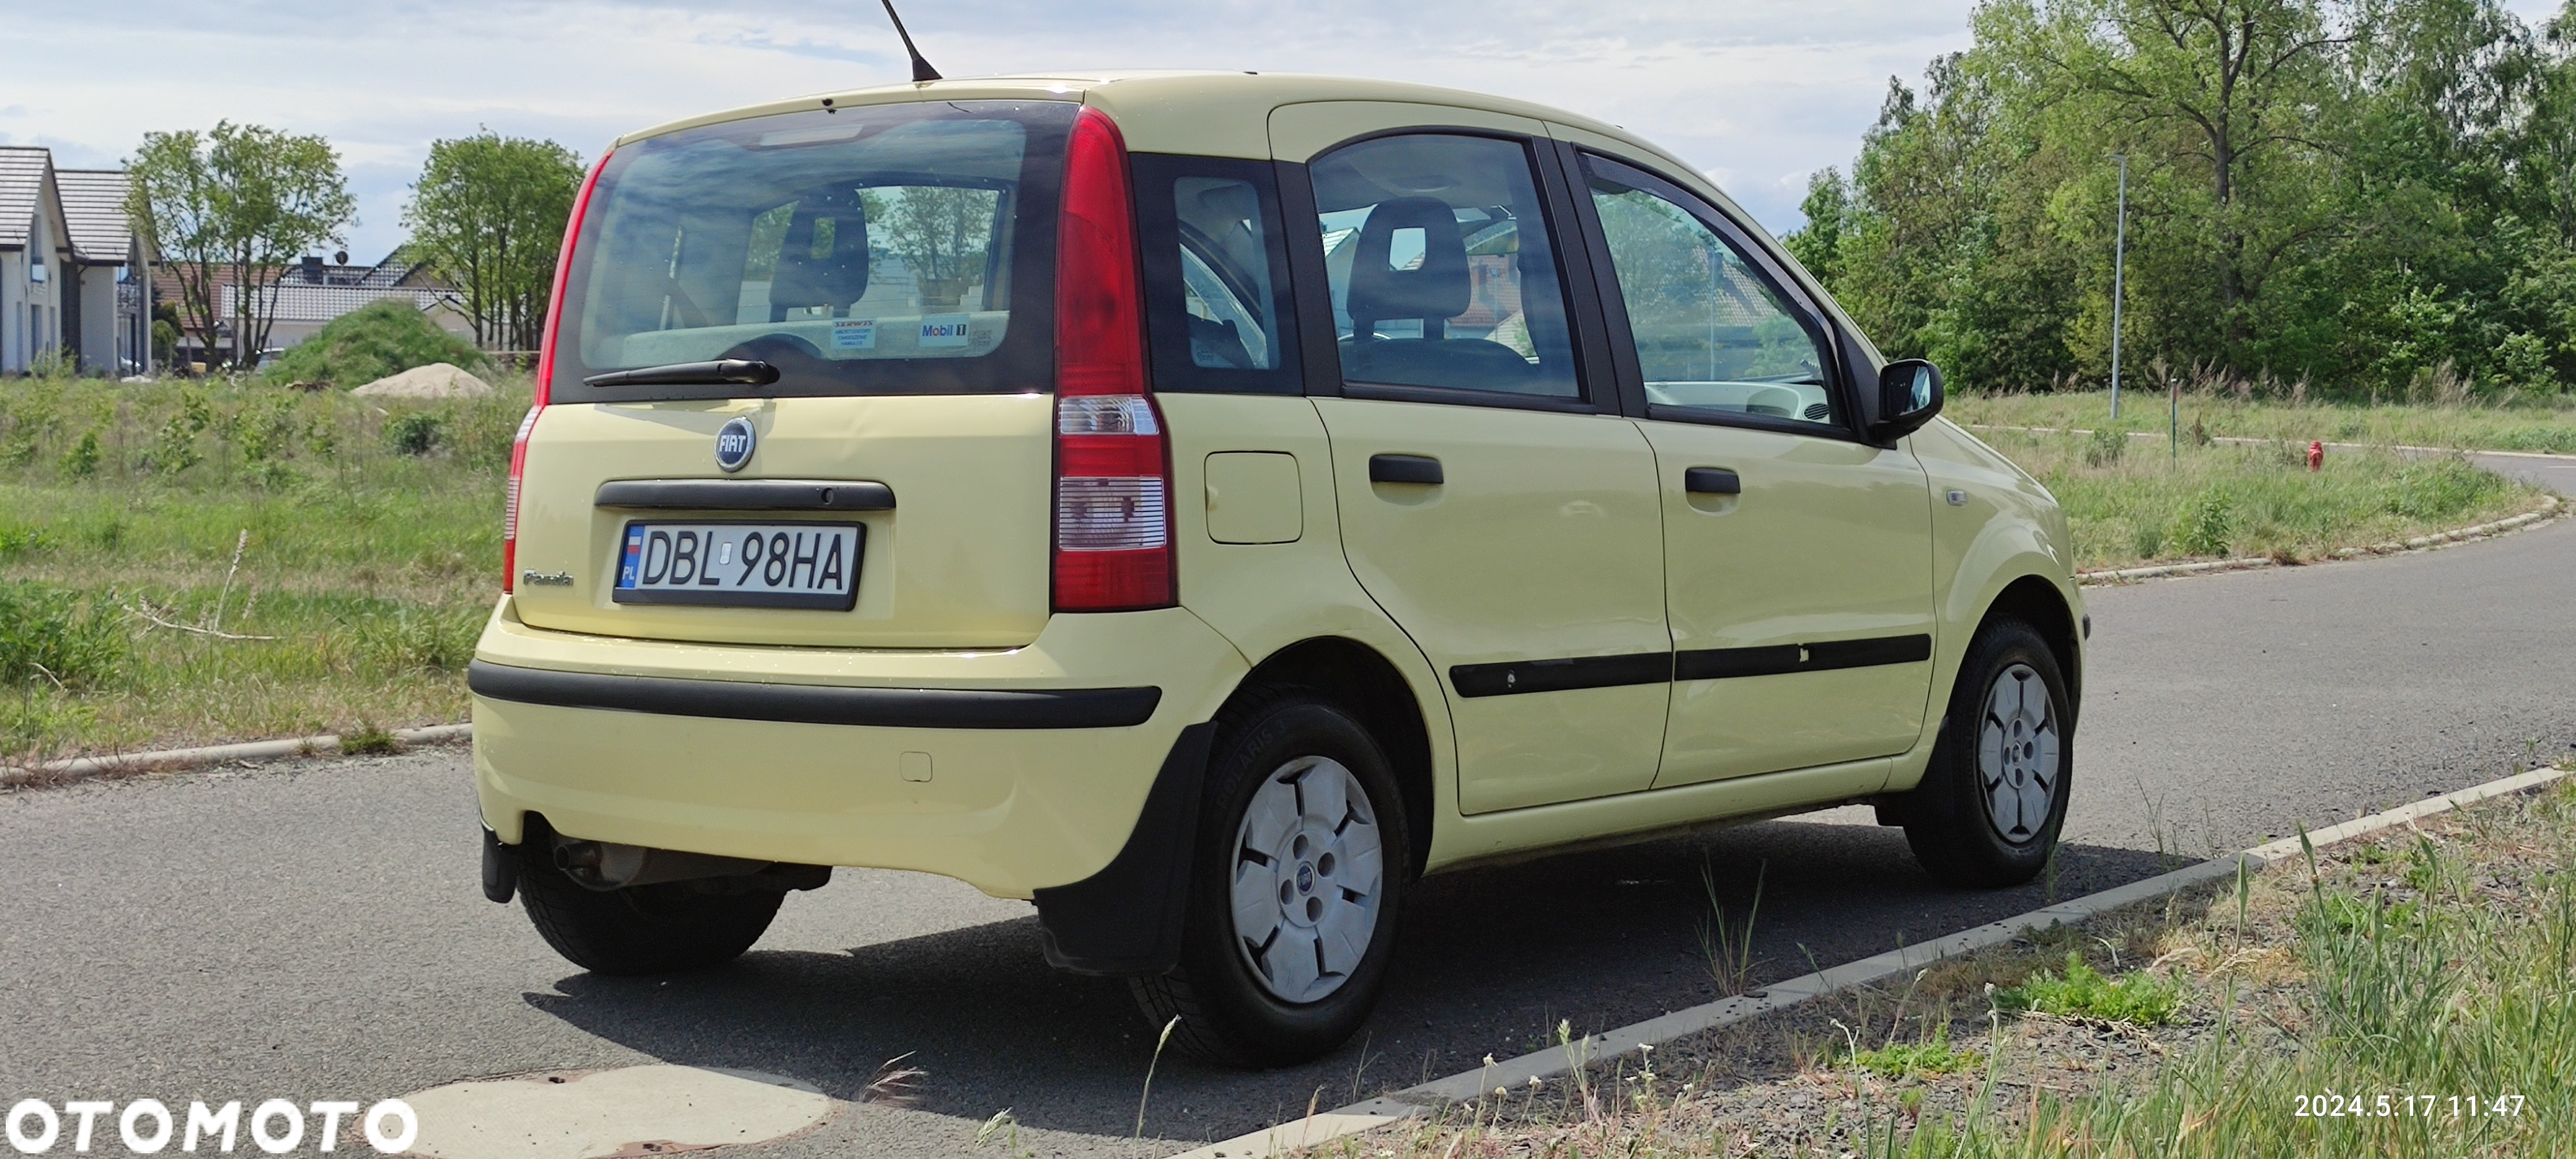 Fiat Panda - 14